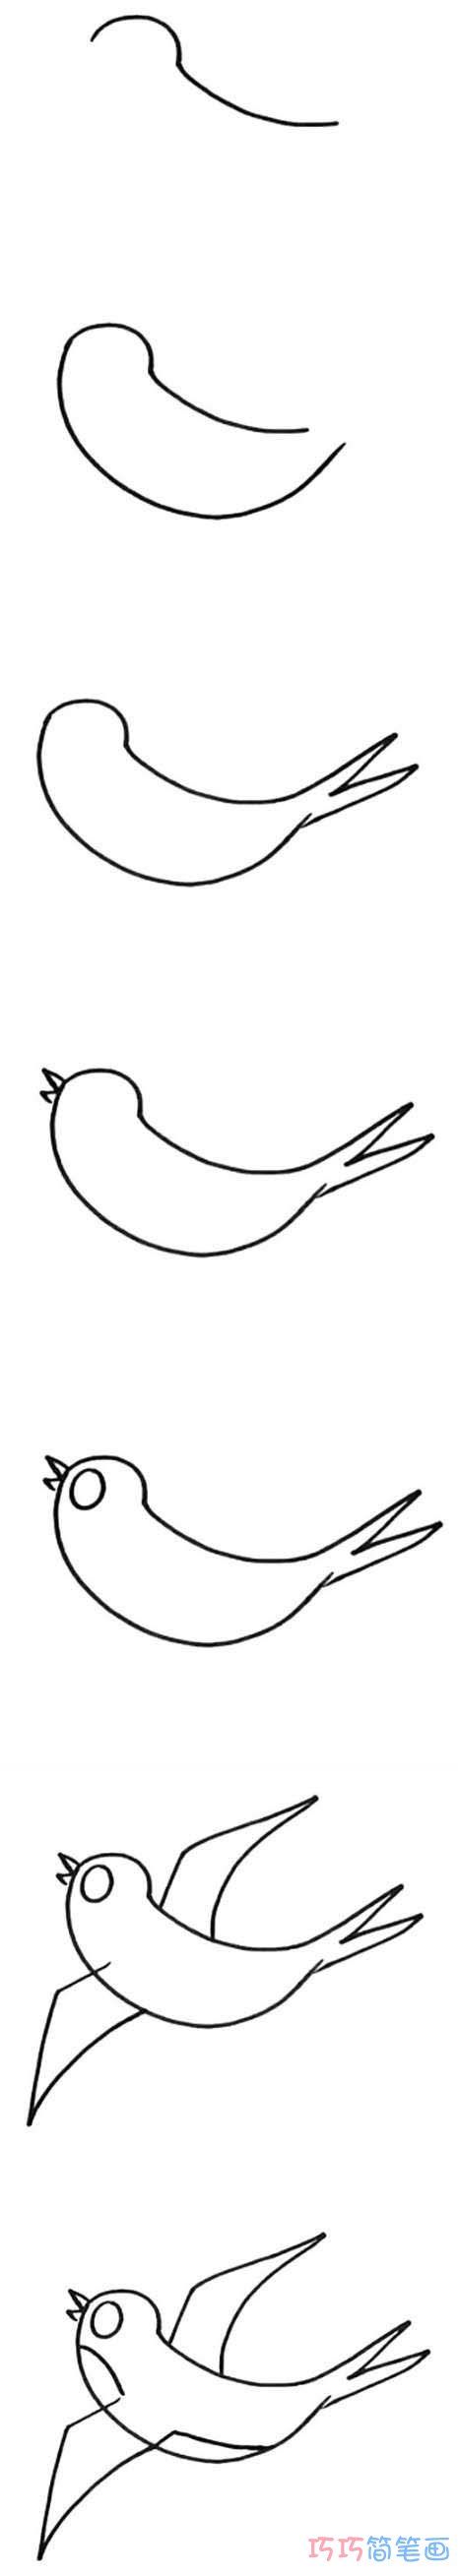 怎么画小燕子详细步骤图简笔画教程涂色